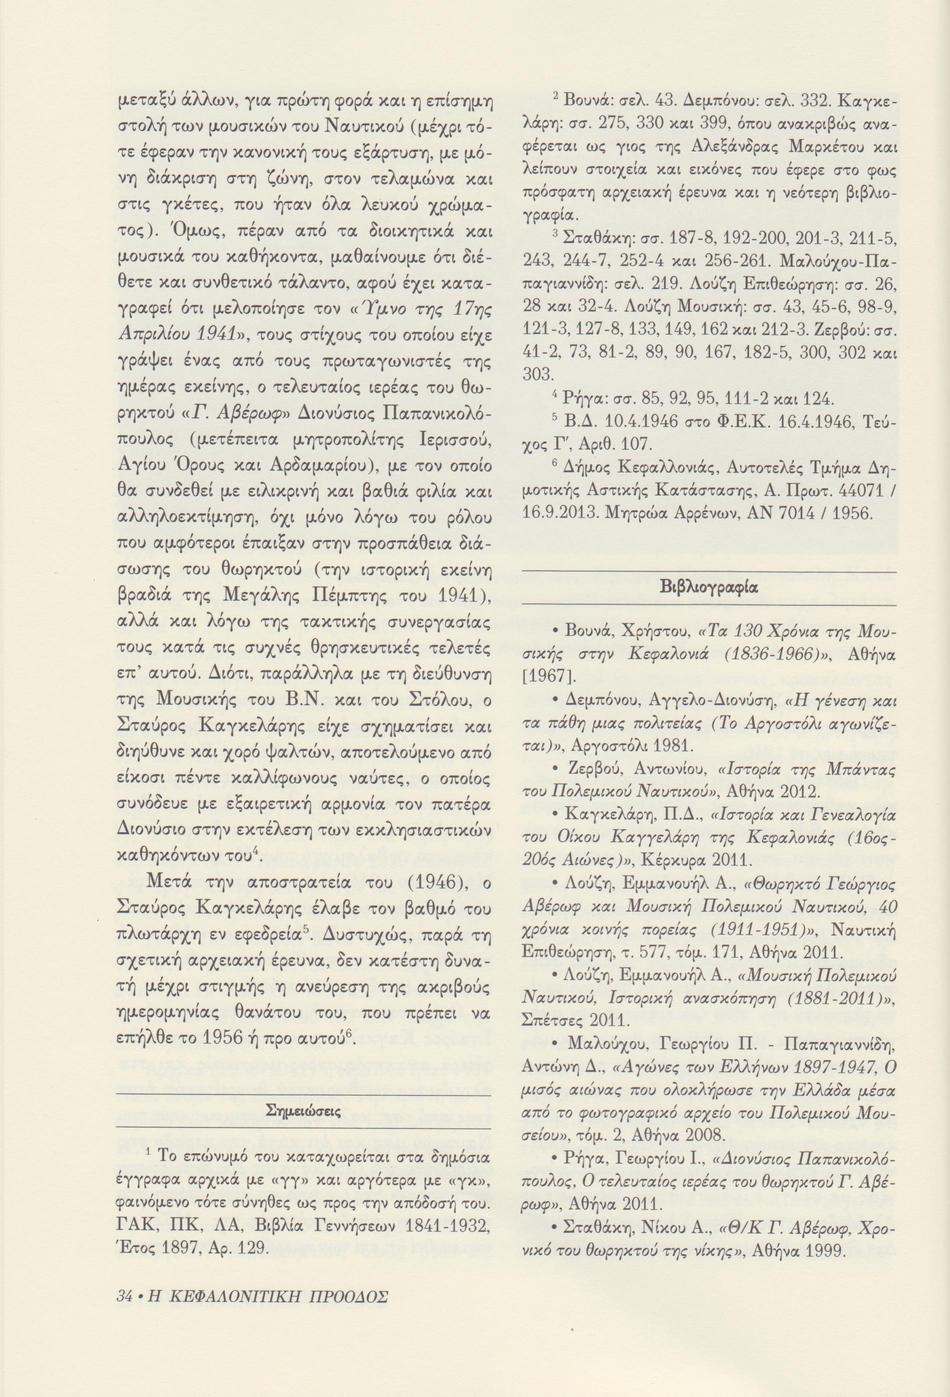 Σταύρος Α. Καγκελάρης , Κεφαλονίτικη Πρόοδος, Β-8, σελ. 34